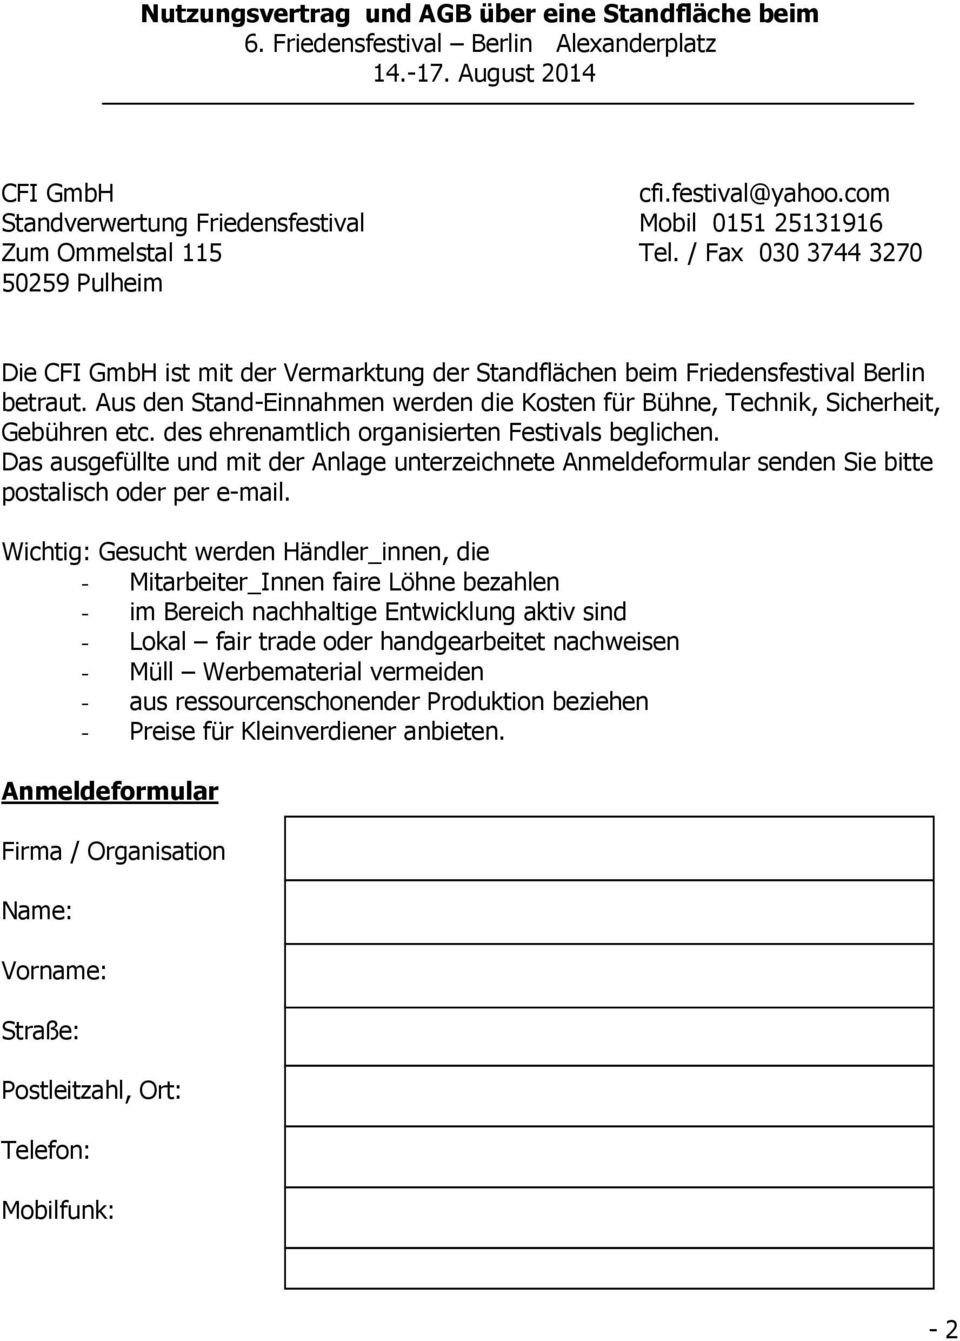 / Fax 030 3744 3270 50259 Pulheim Die CFI GmbH ist mit der Vermarktung der Standflächen beim Friedensfestival Berlin betraut.